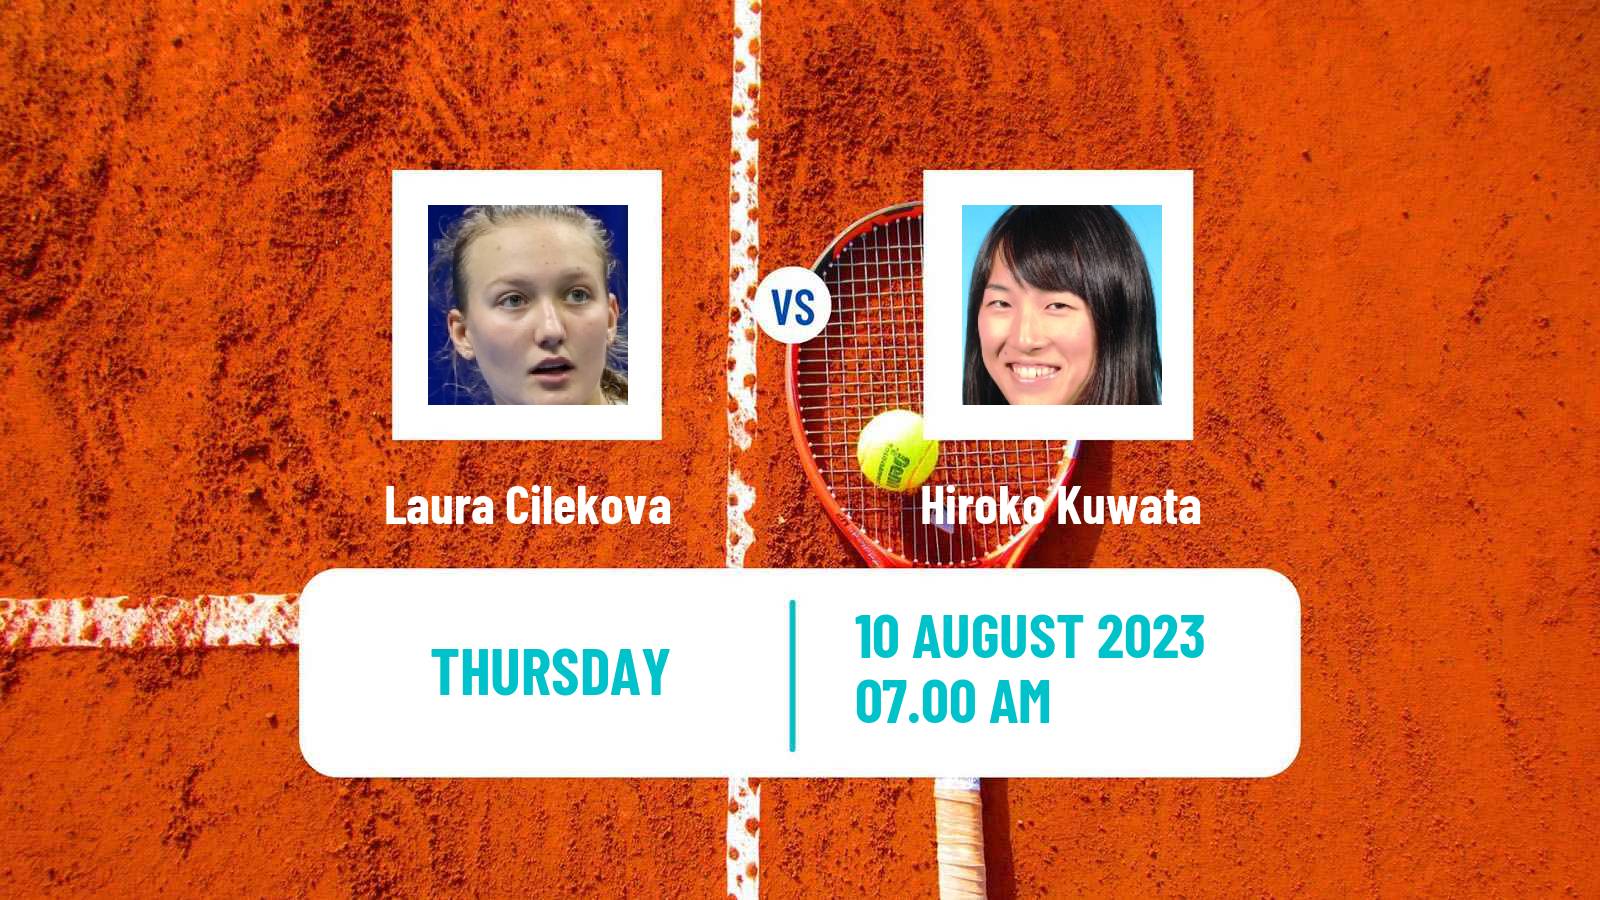 Tennis ITF W15 Monastir 22 Women Laura Cilekova - Hiroko Kuwata